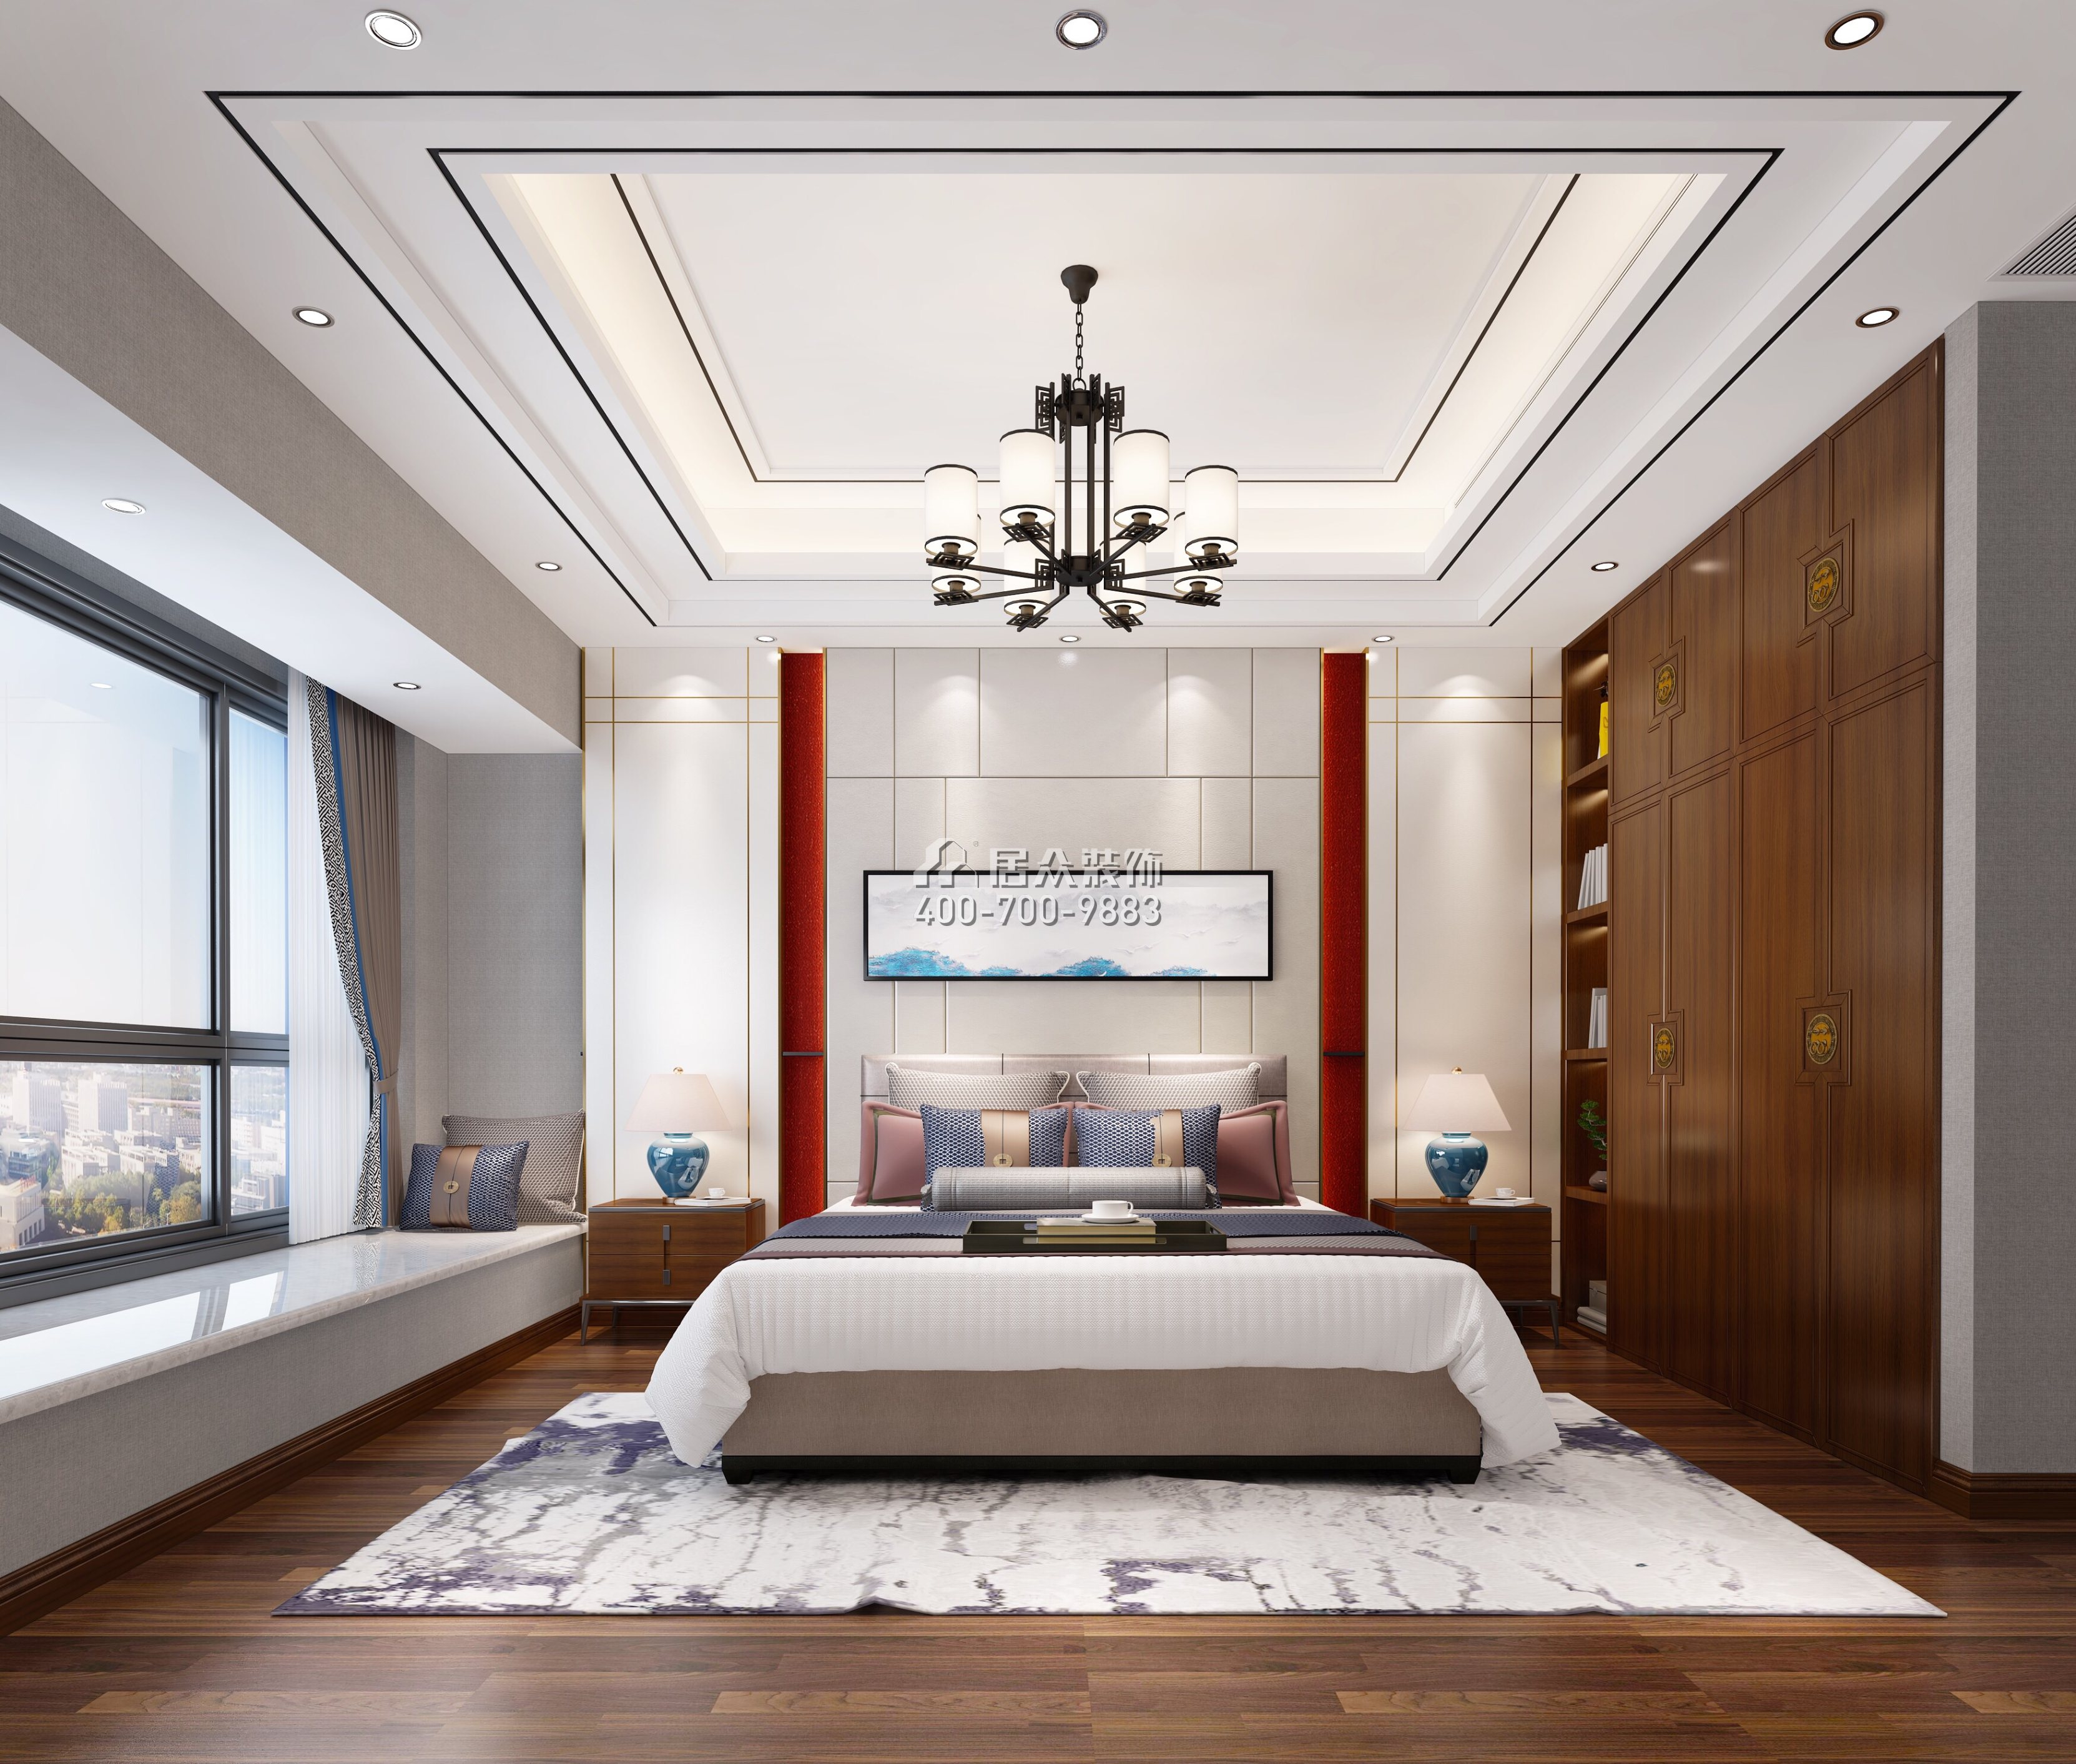 中信领航一期160平方米中式风格平层户型卧室装修效果图